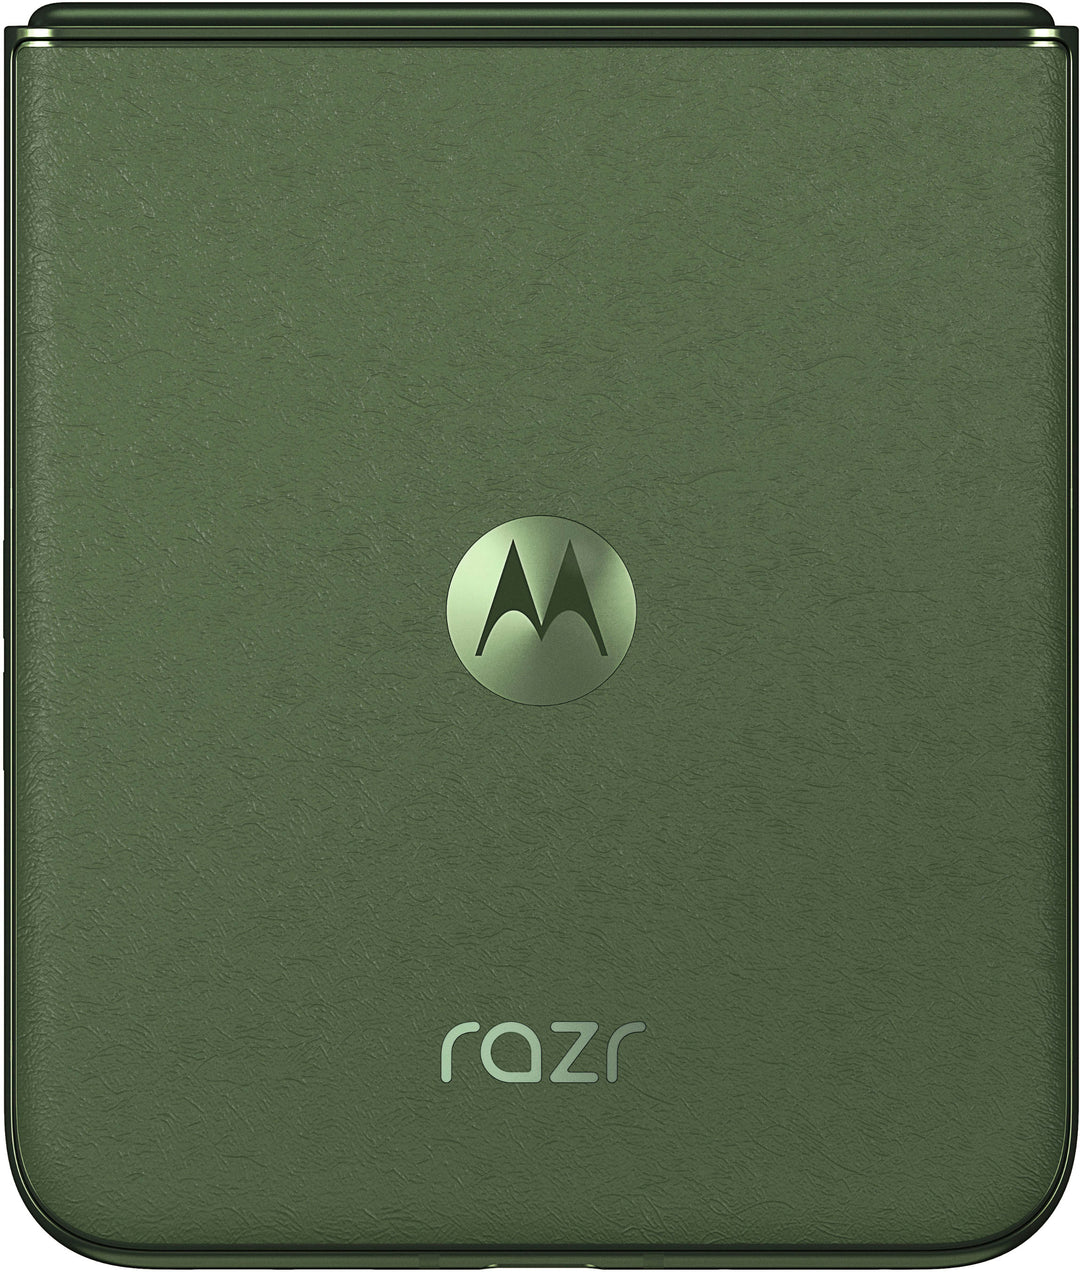 Motorola - razr+ 2024 256GB (Unlocked) - Spring Green_1